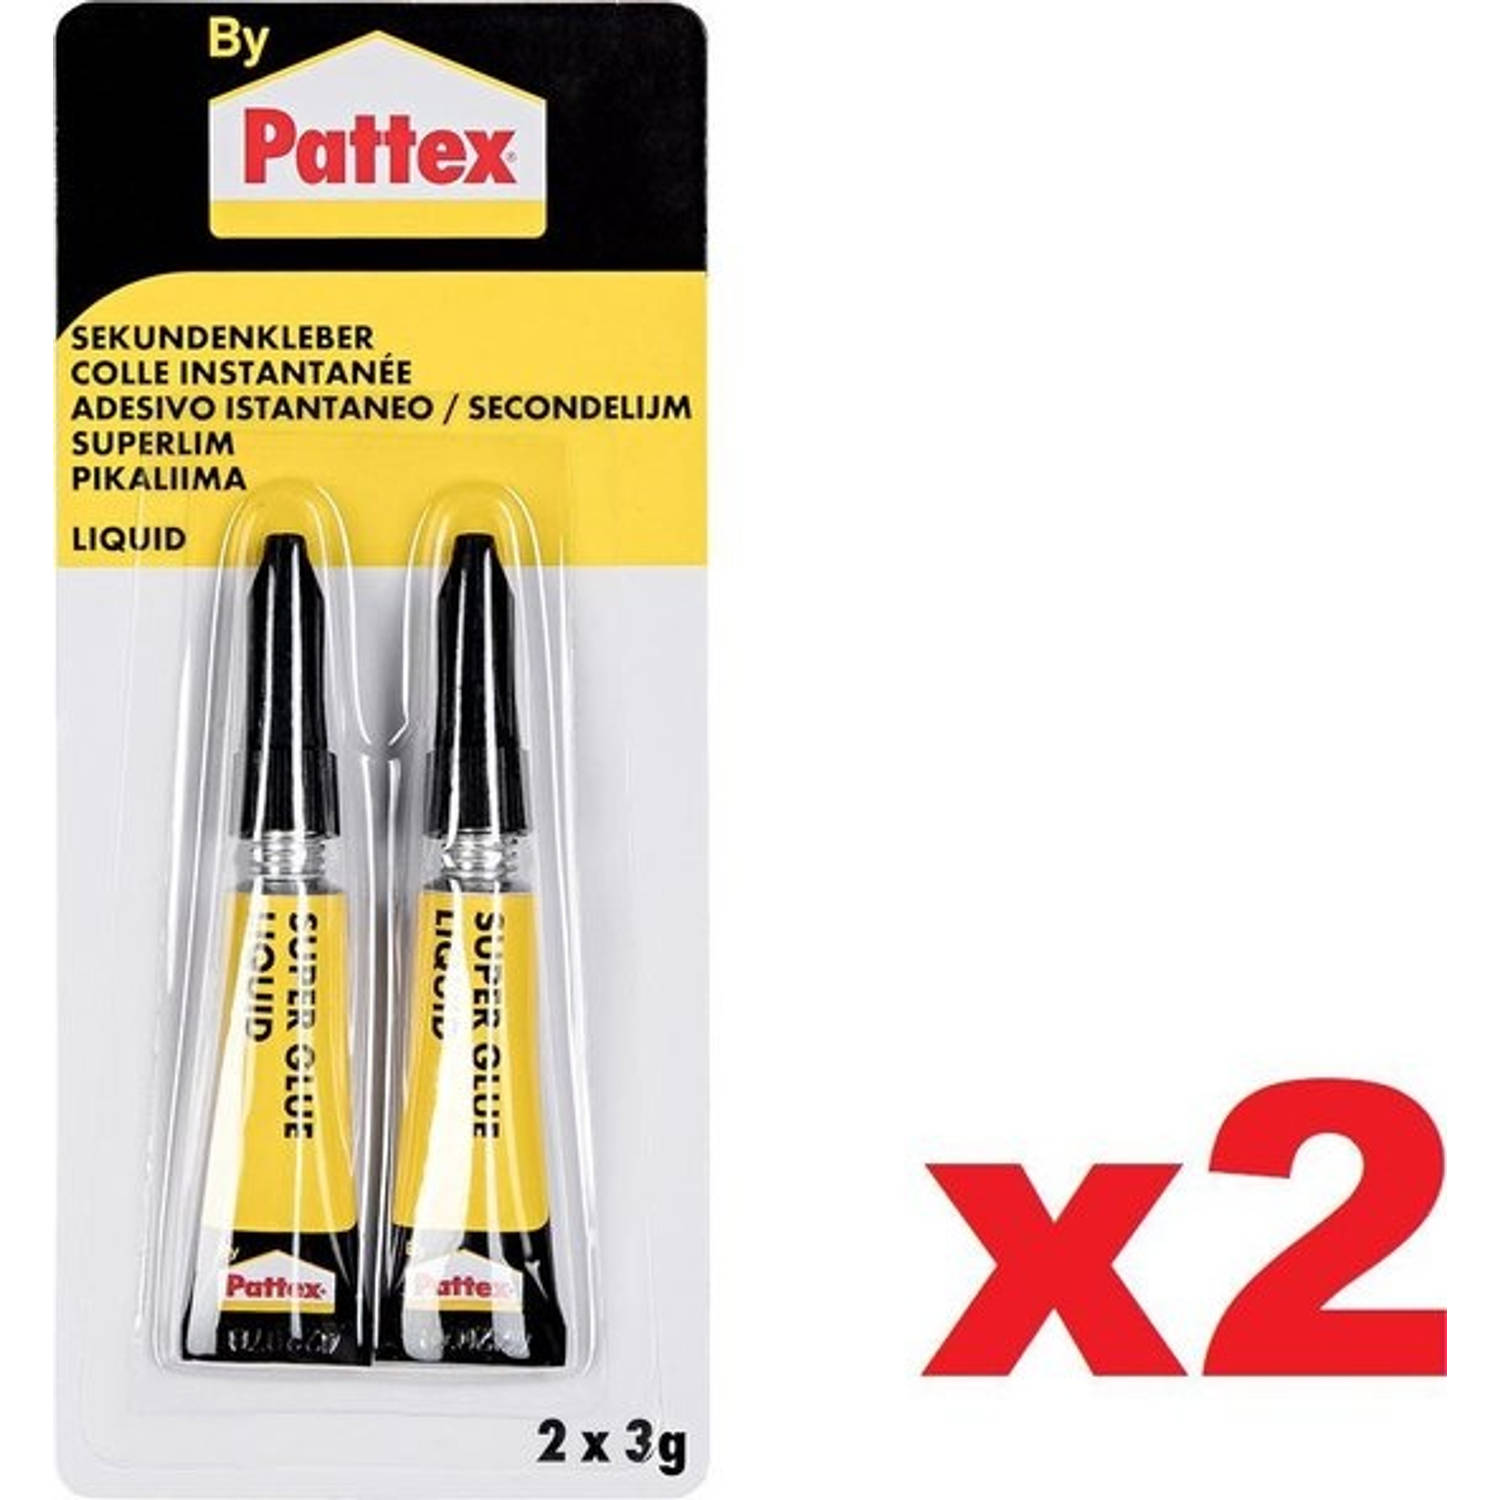 PATTEX Seconde-Lijm Classic - In 10 Sec Gelijmd - Porselein Metaal Rubber Leder Hout Papier Plastic - 3g x 4 Stuks